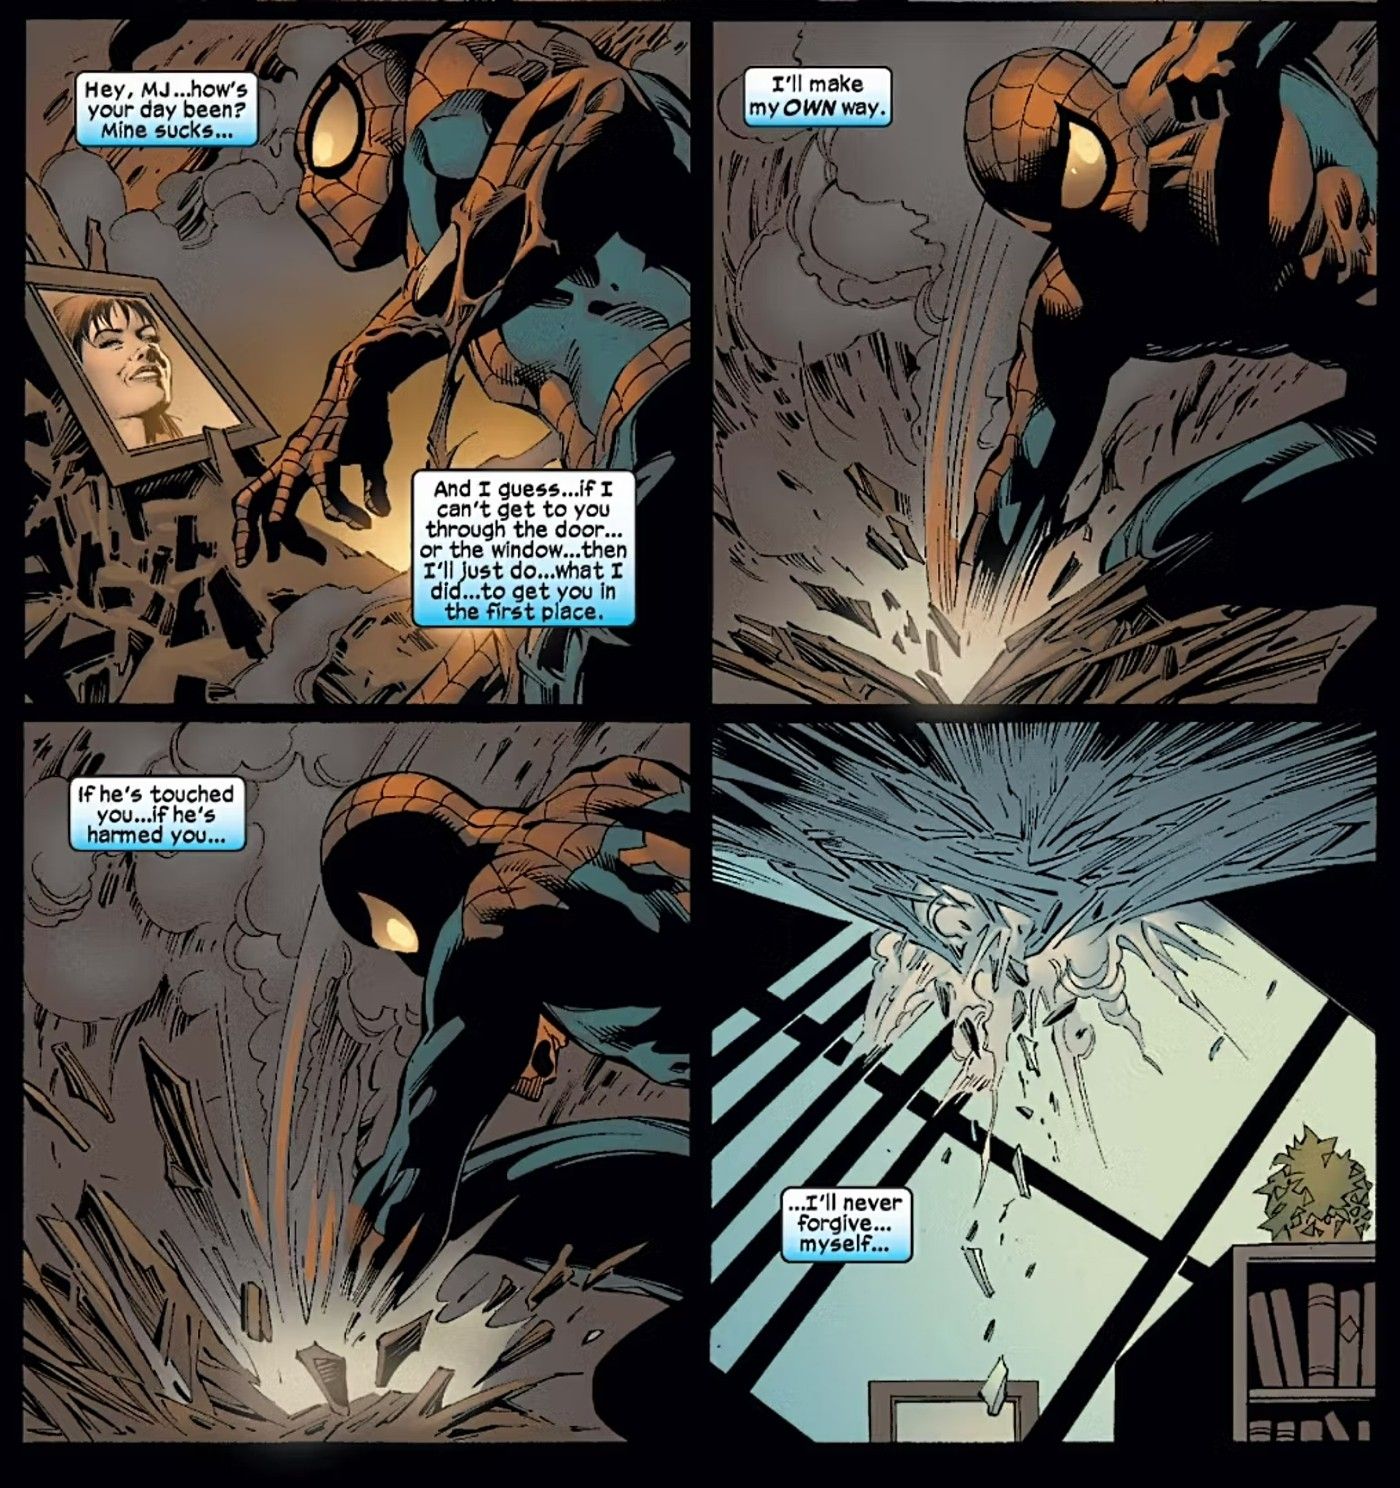 Spider-Man golpea el suelo de su apartamento en llamas y le dice a una imagen de MJ que, si ella ha sido lastimada, él nunca se lo perdonará.